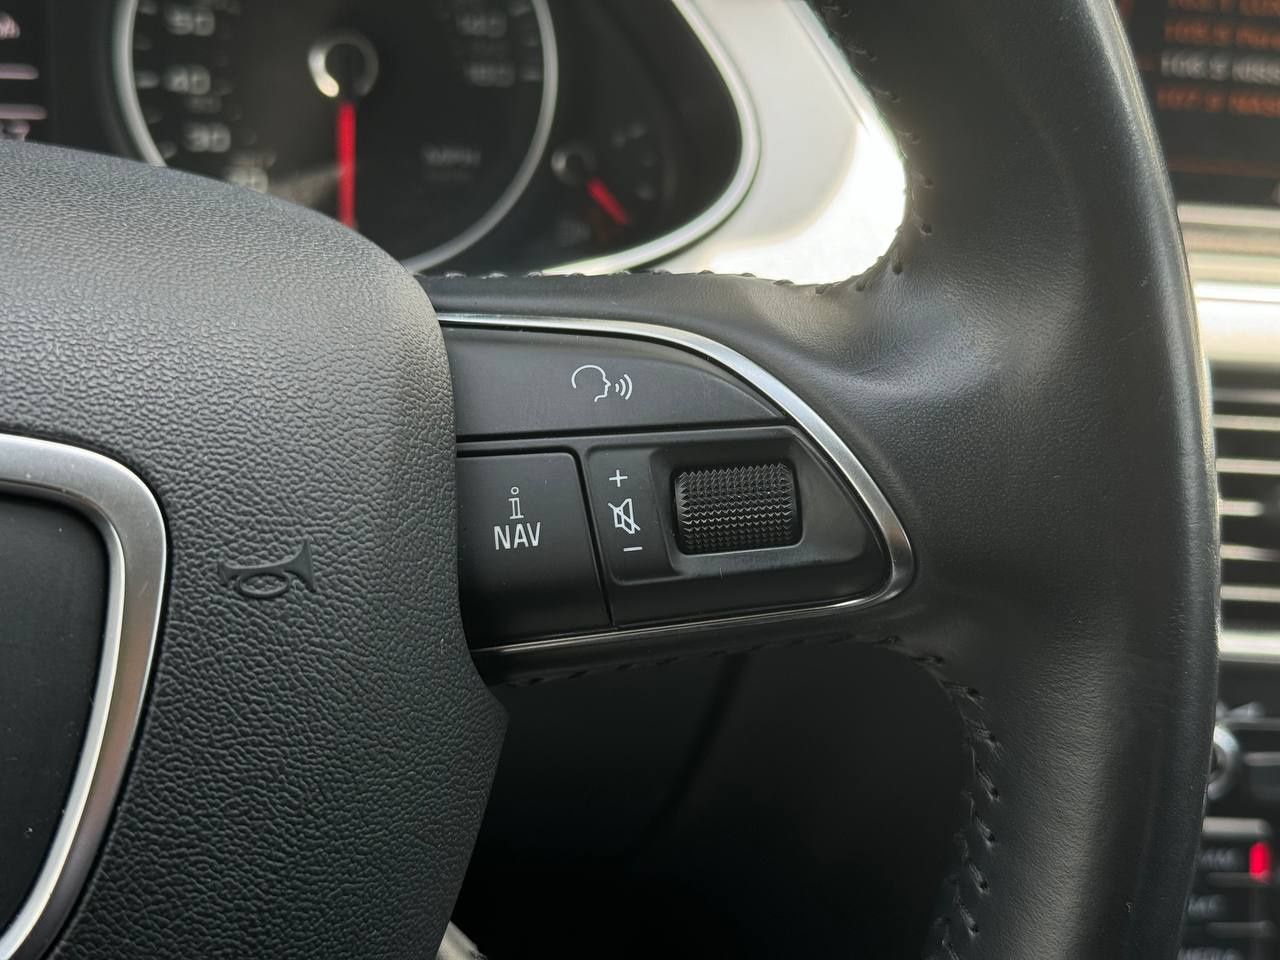 Audi А4 2015року, 2.0 бензин, автомат, передній привід, 198т.км.